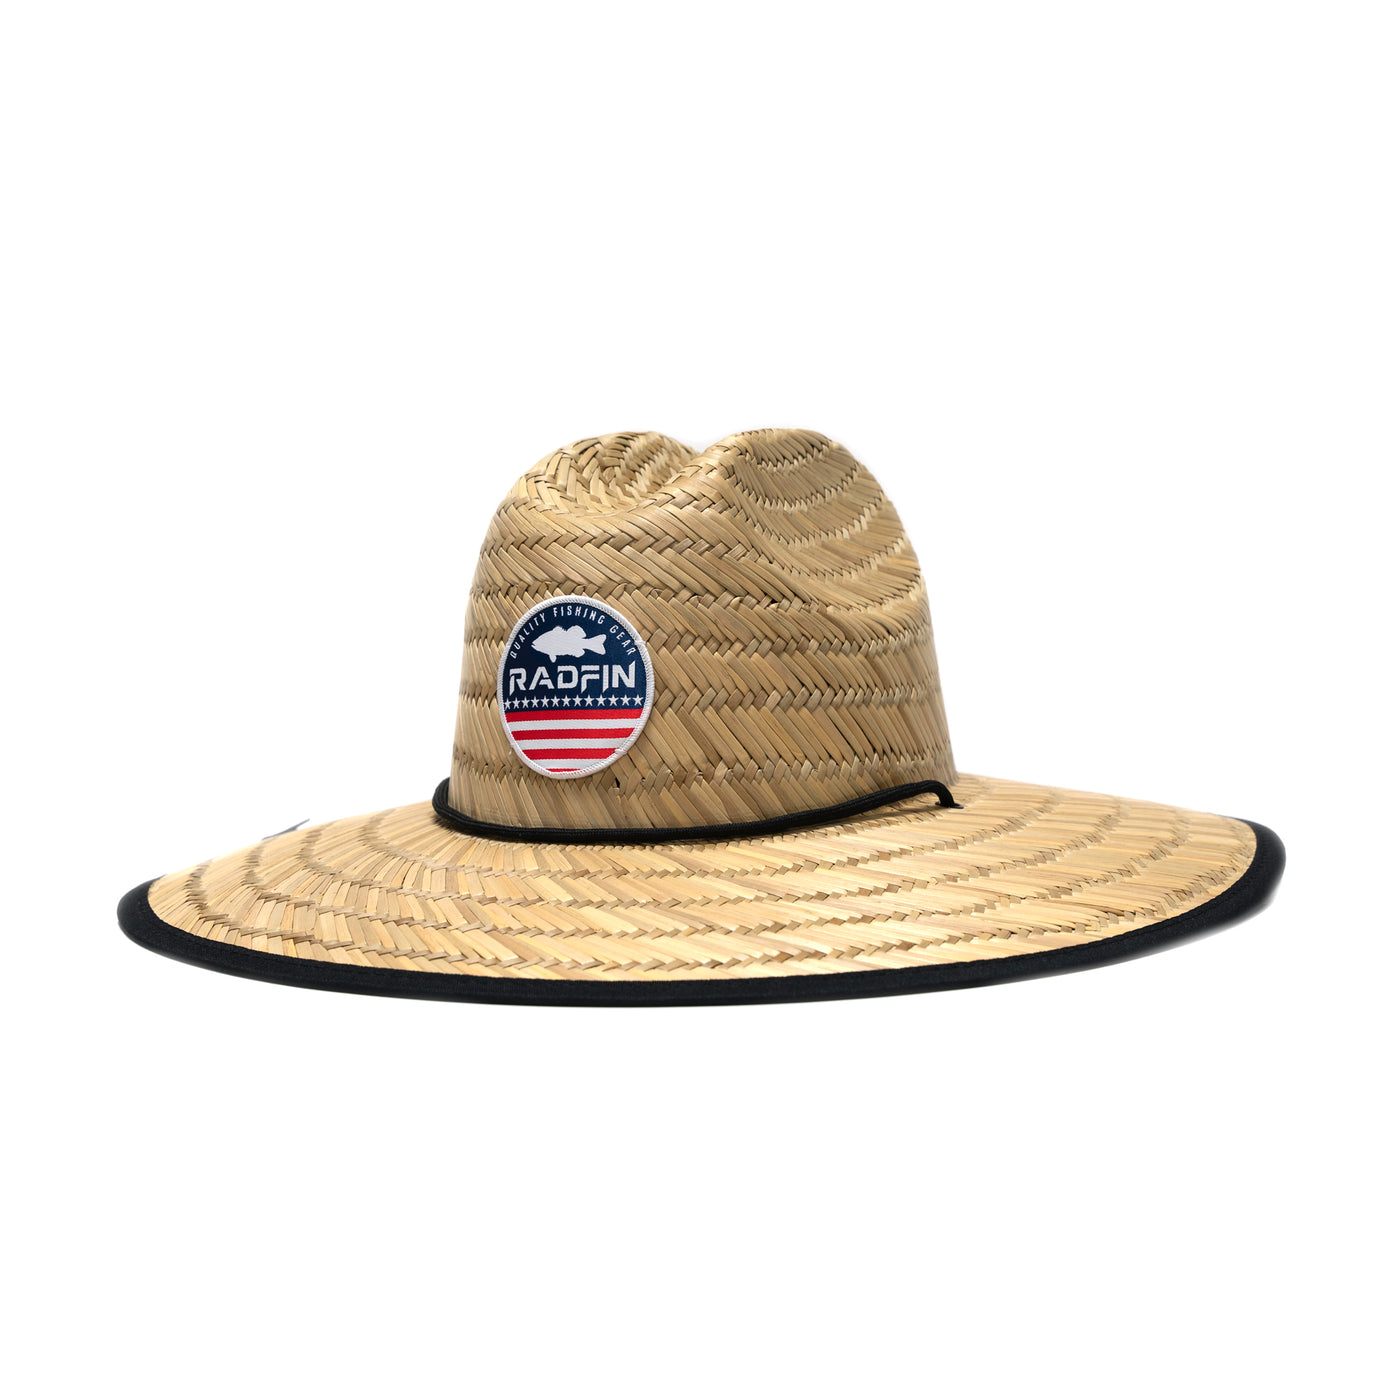 RadFin USA Straw Hat